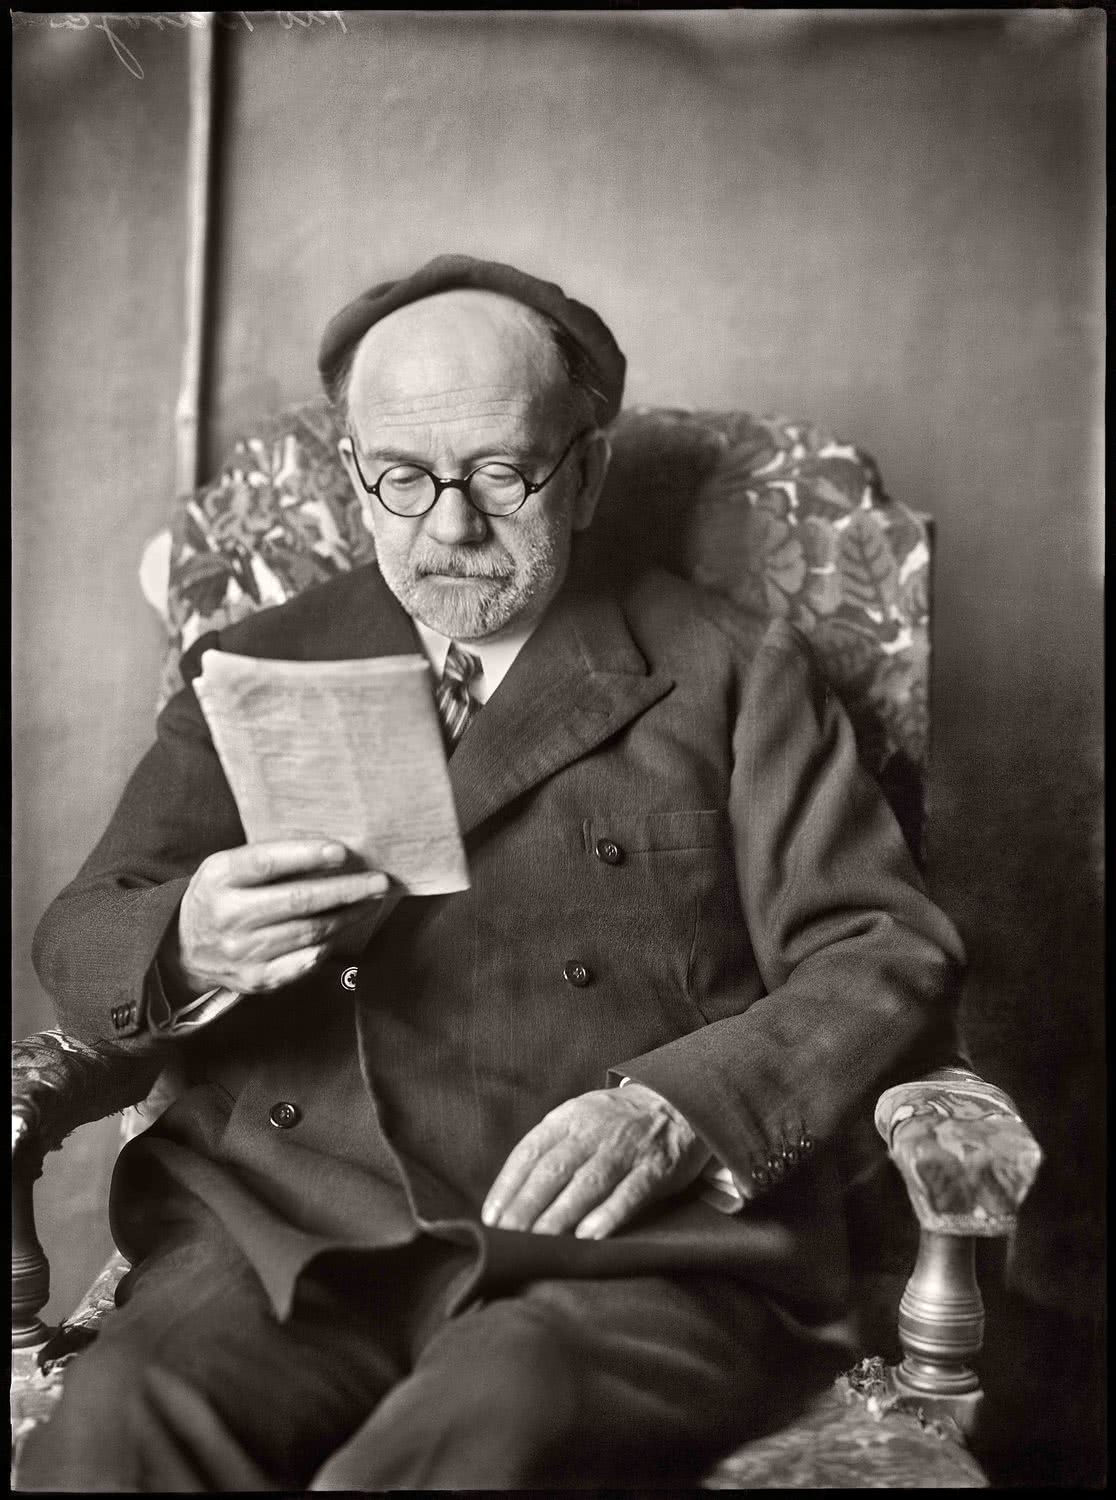 MORENO. Don Pío Baroja retratado leyendo en estudio del pintor Echevarría. Hacia 1930. (Fototeca del Instituto del Patrimonio Cultural de España, MECD)